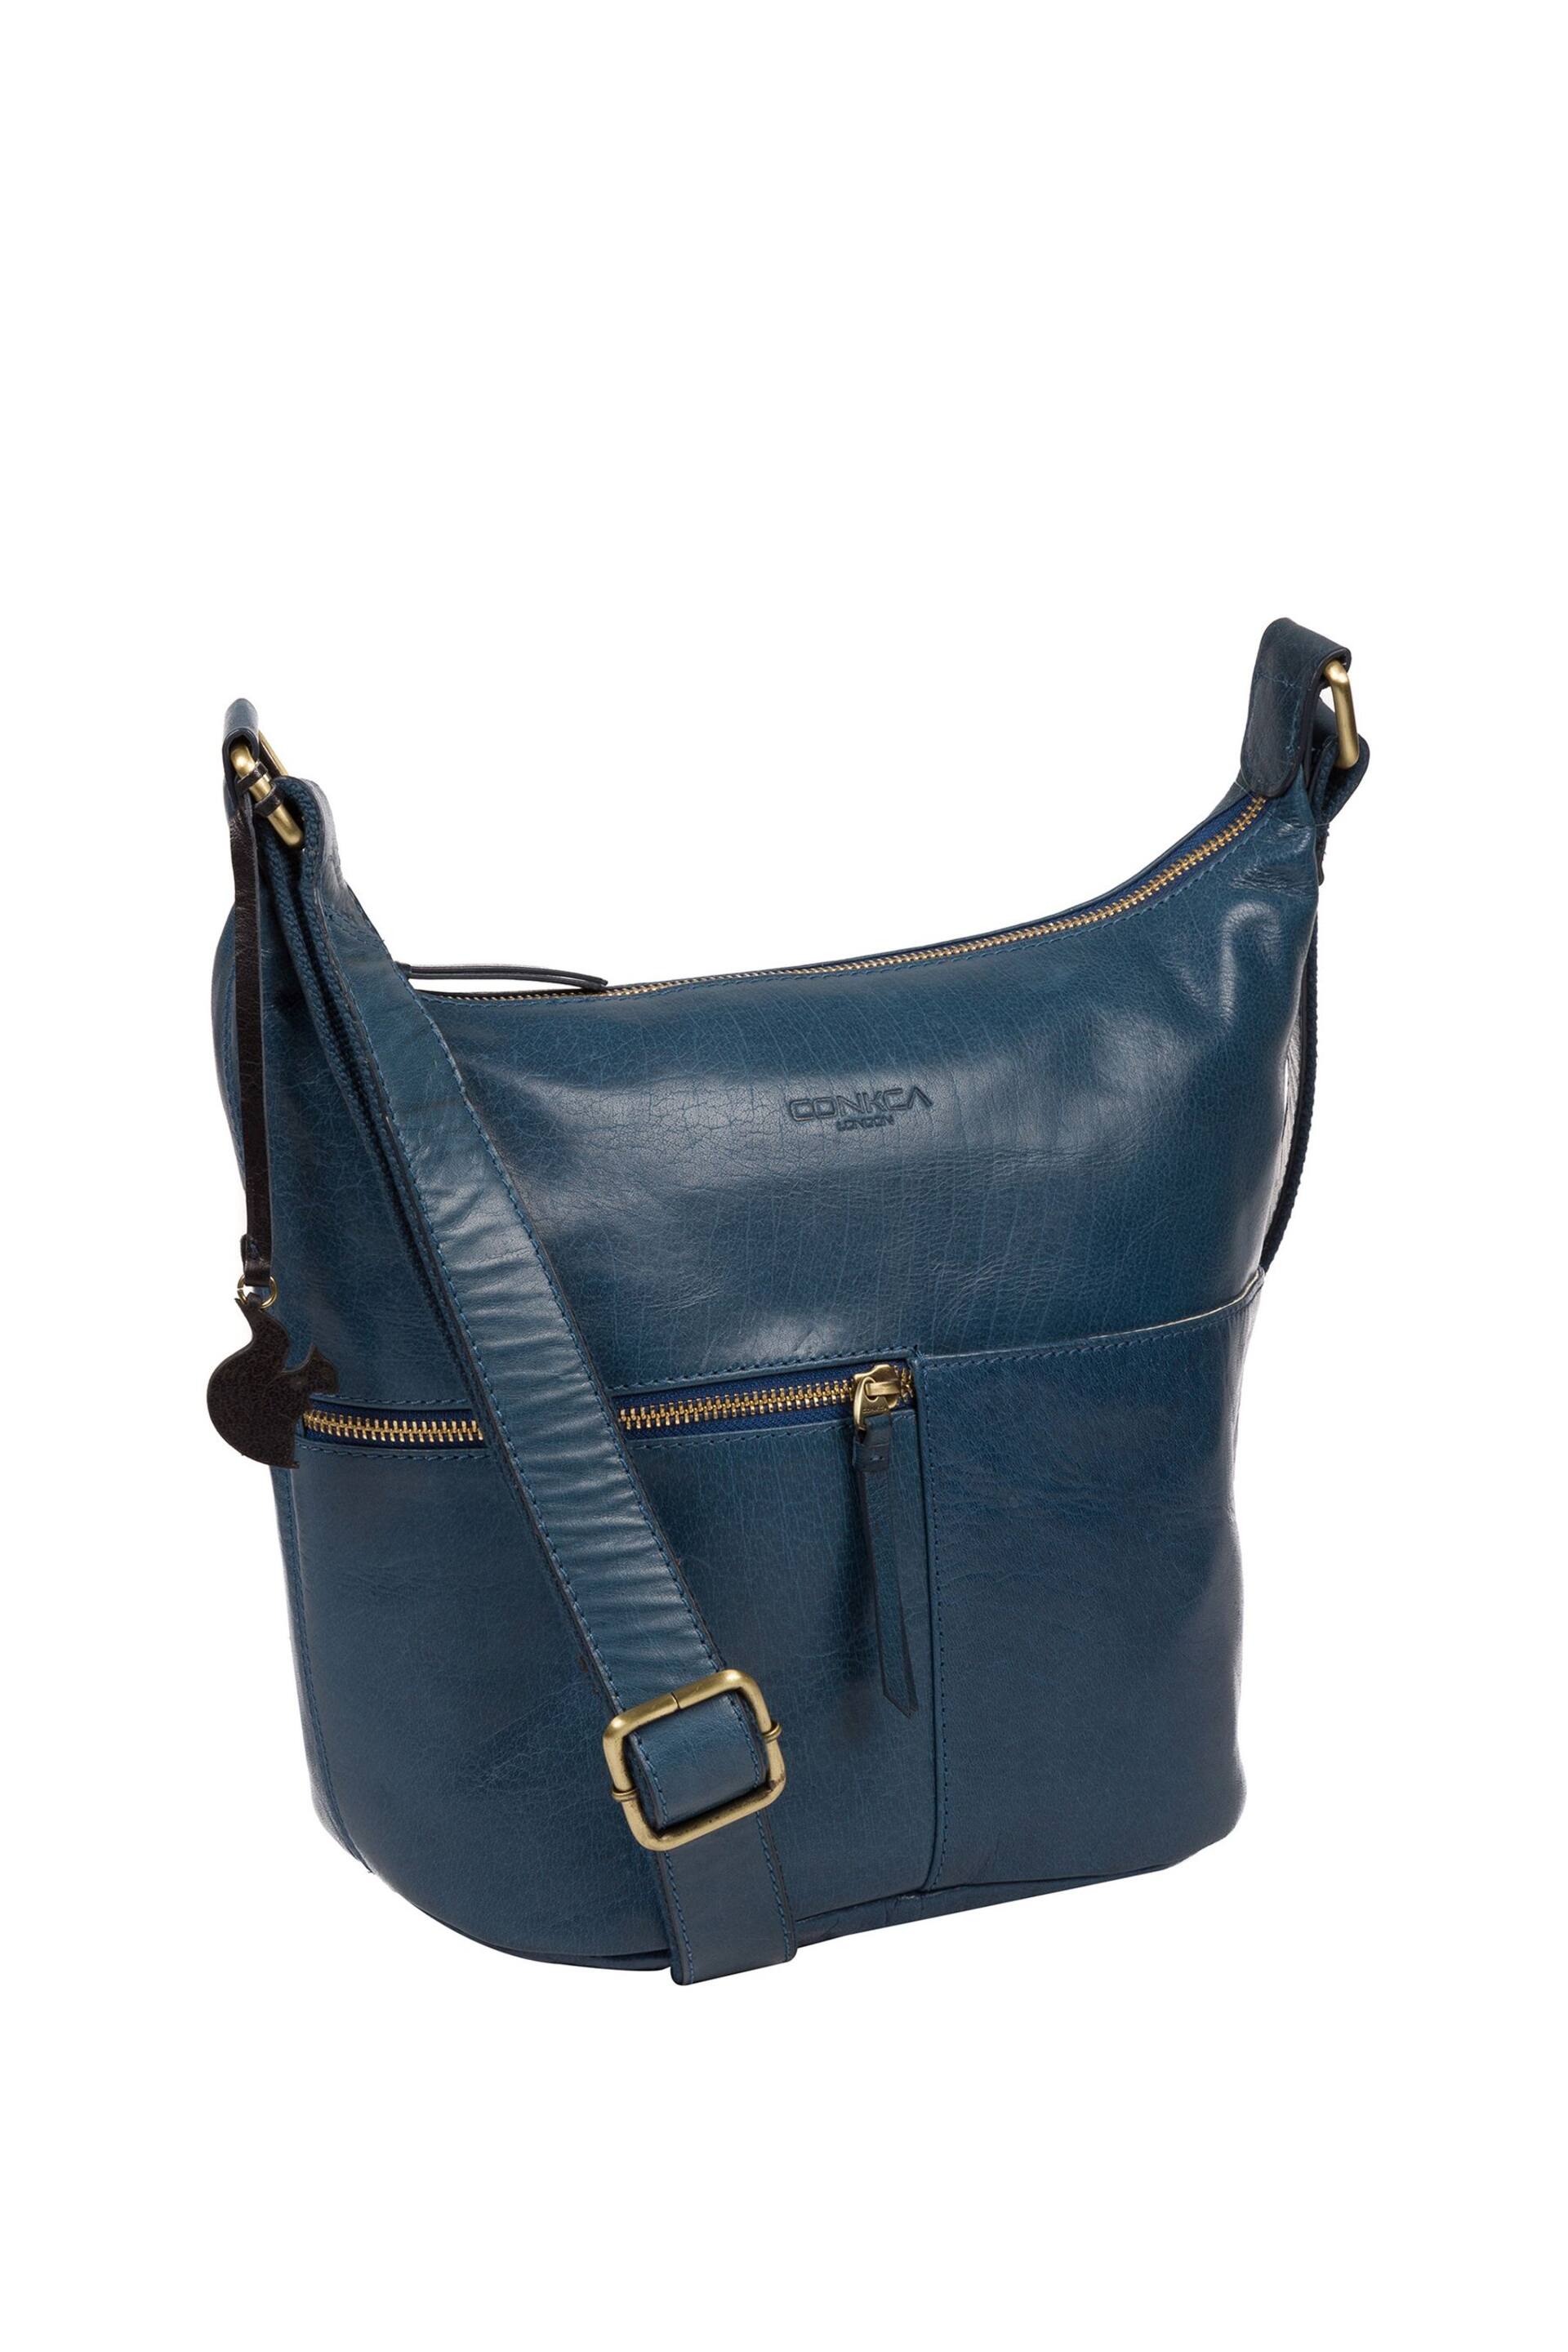 Conkca Kristin Leather Shoulder Bag - Image 3 of 7